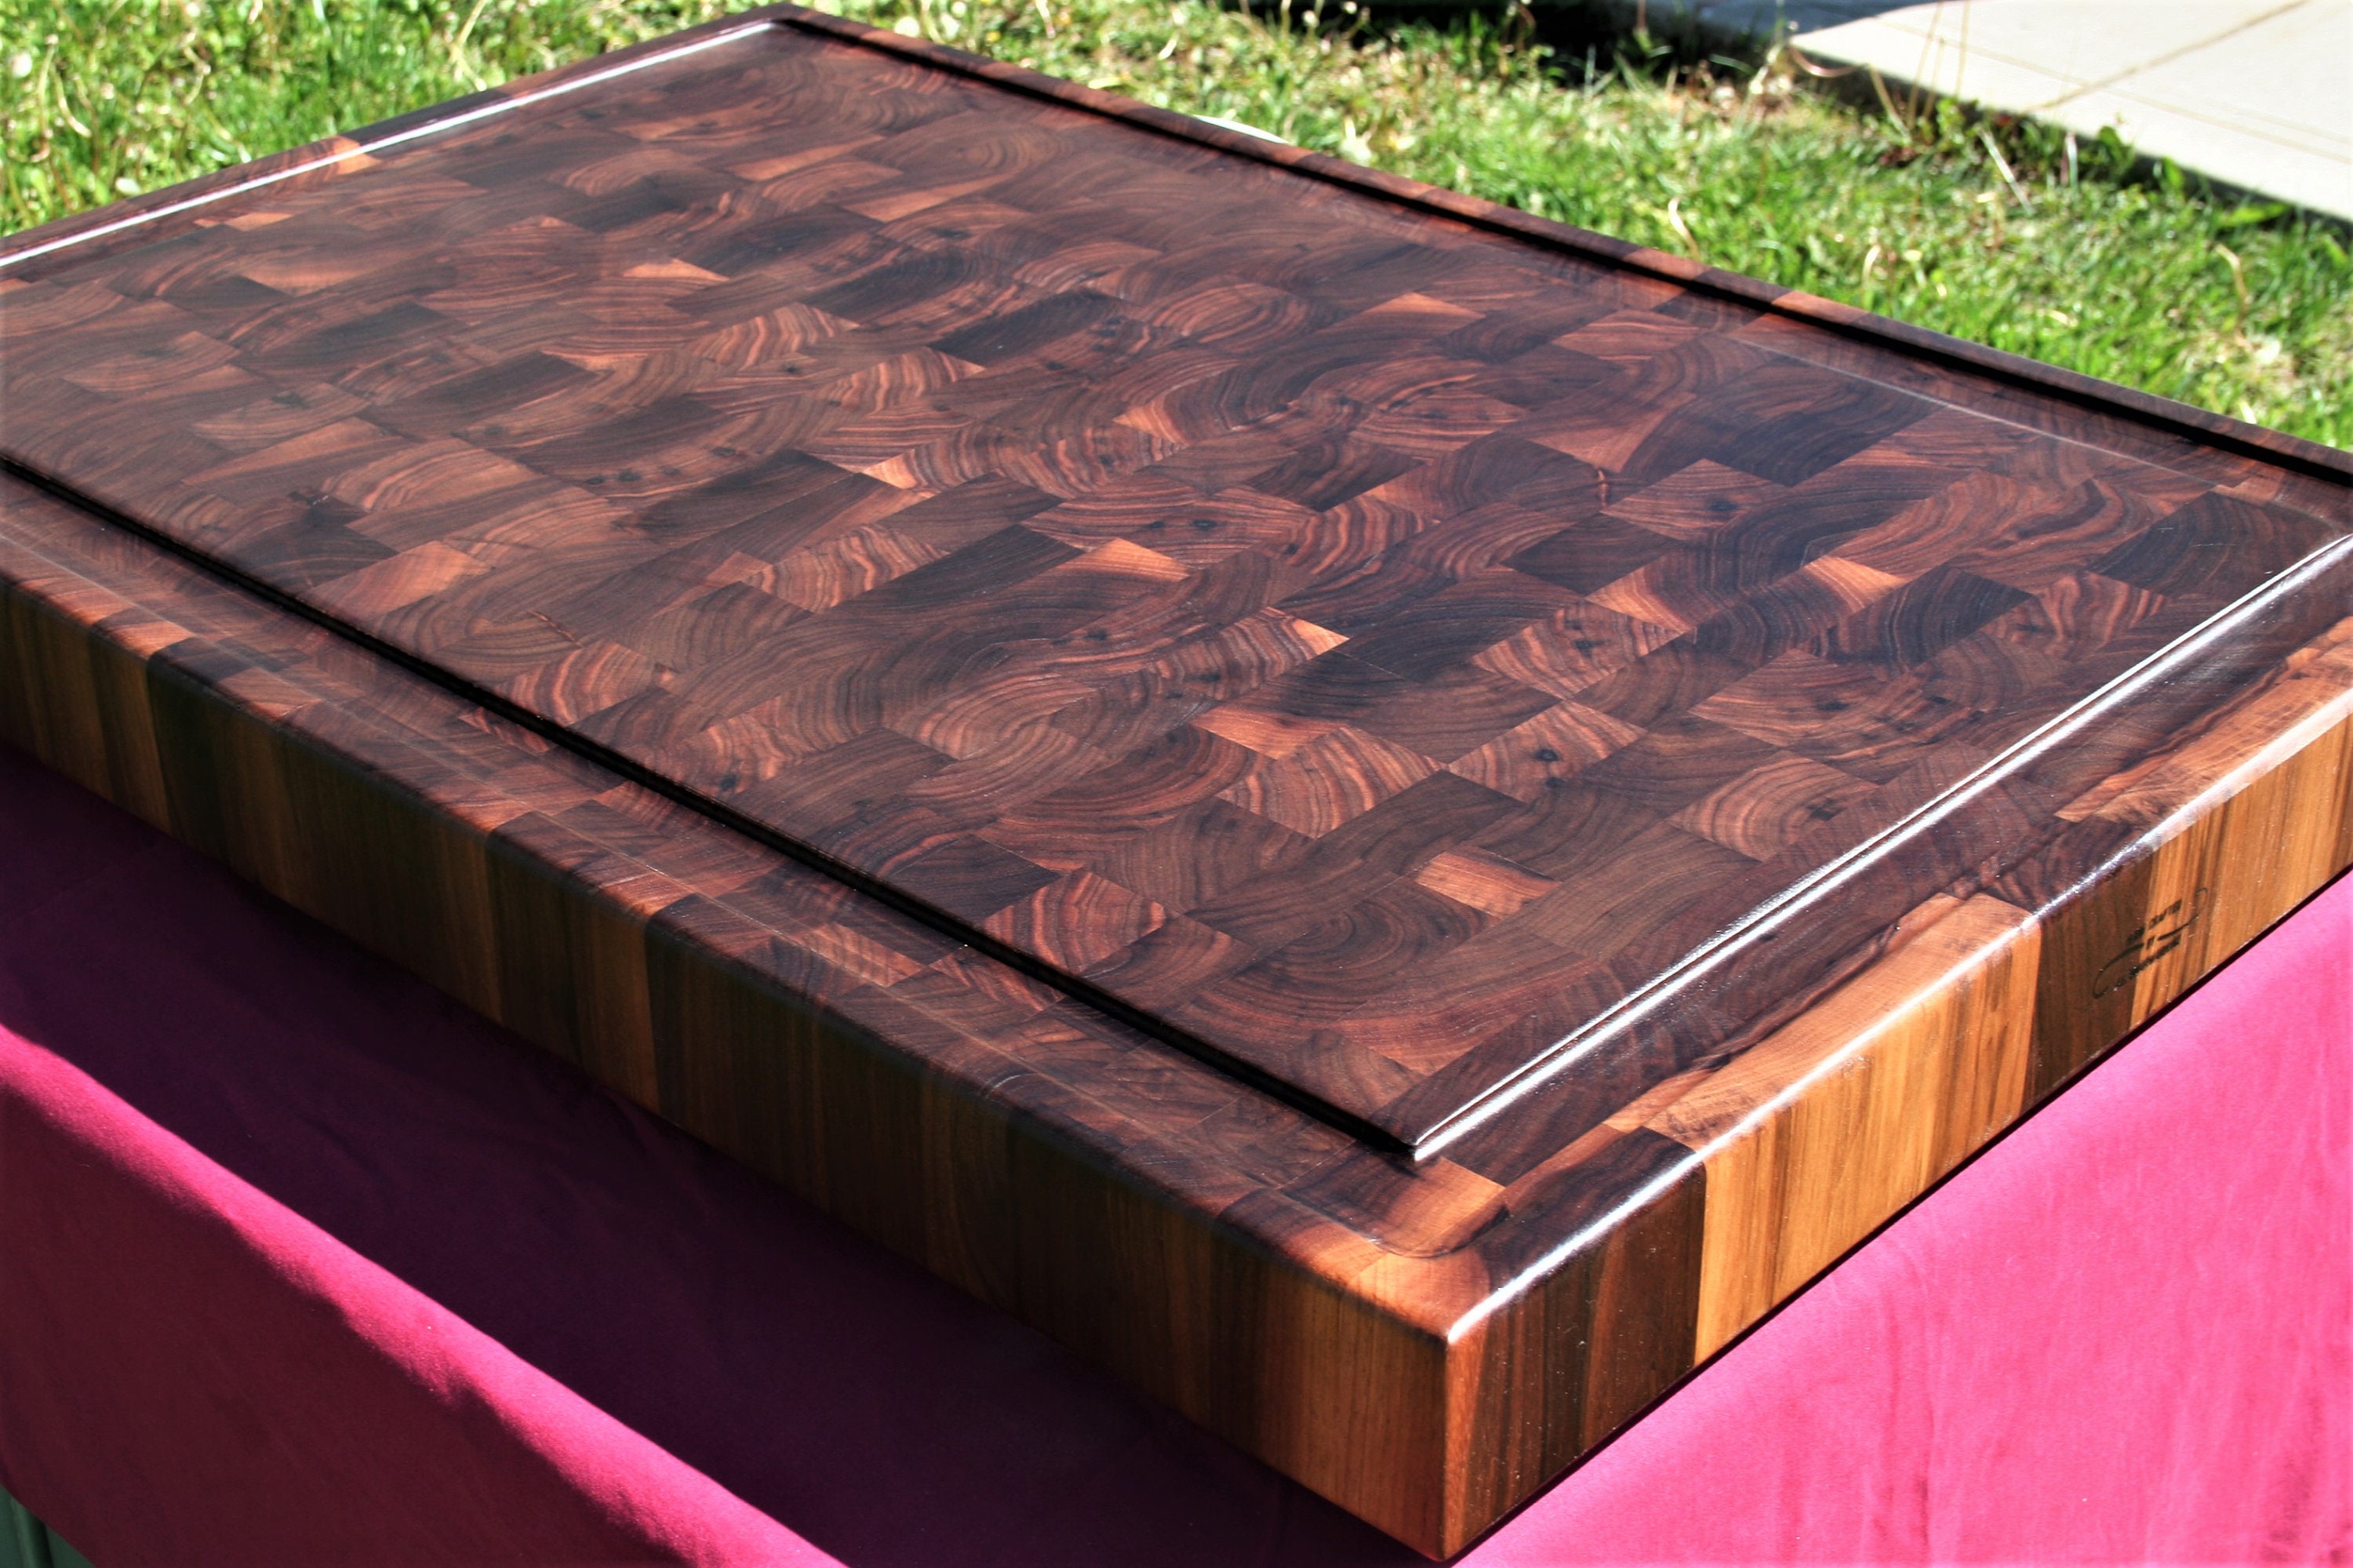 Large Wood Cutting Board  Walnut End Grain Cutting Board – Pit